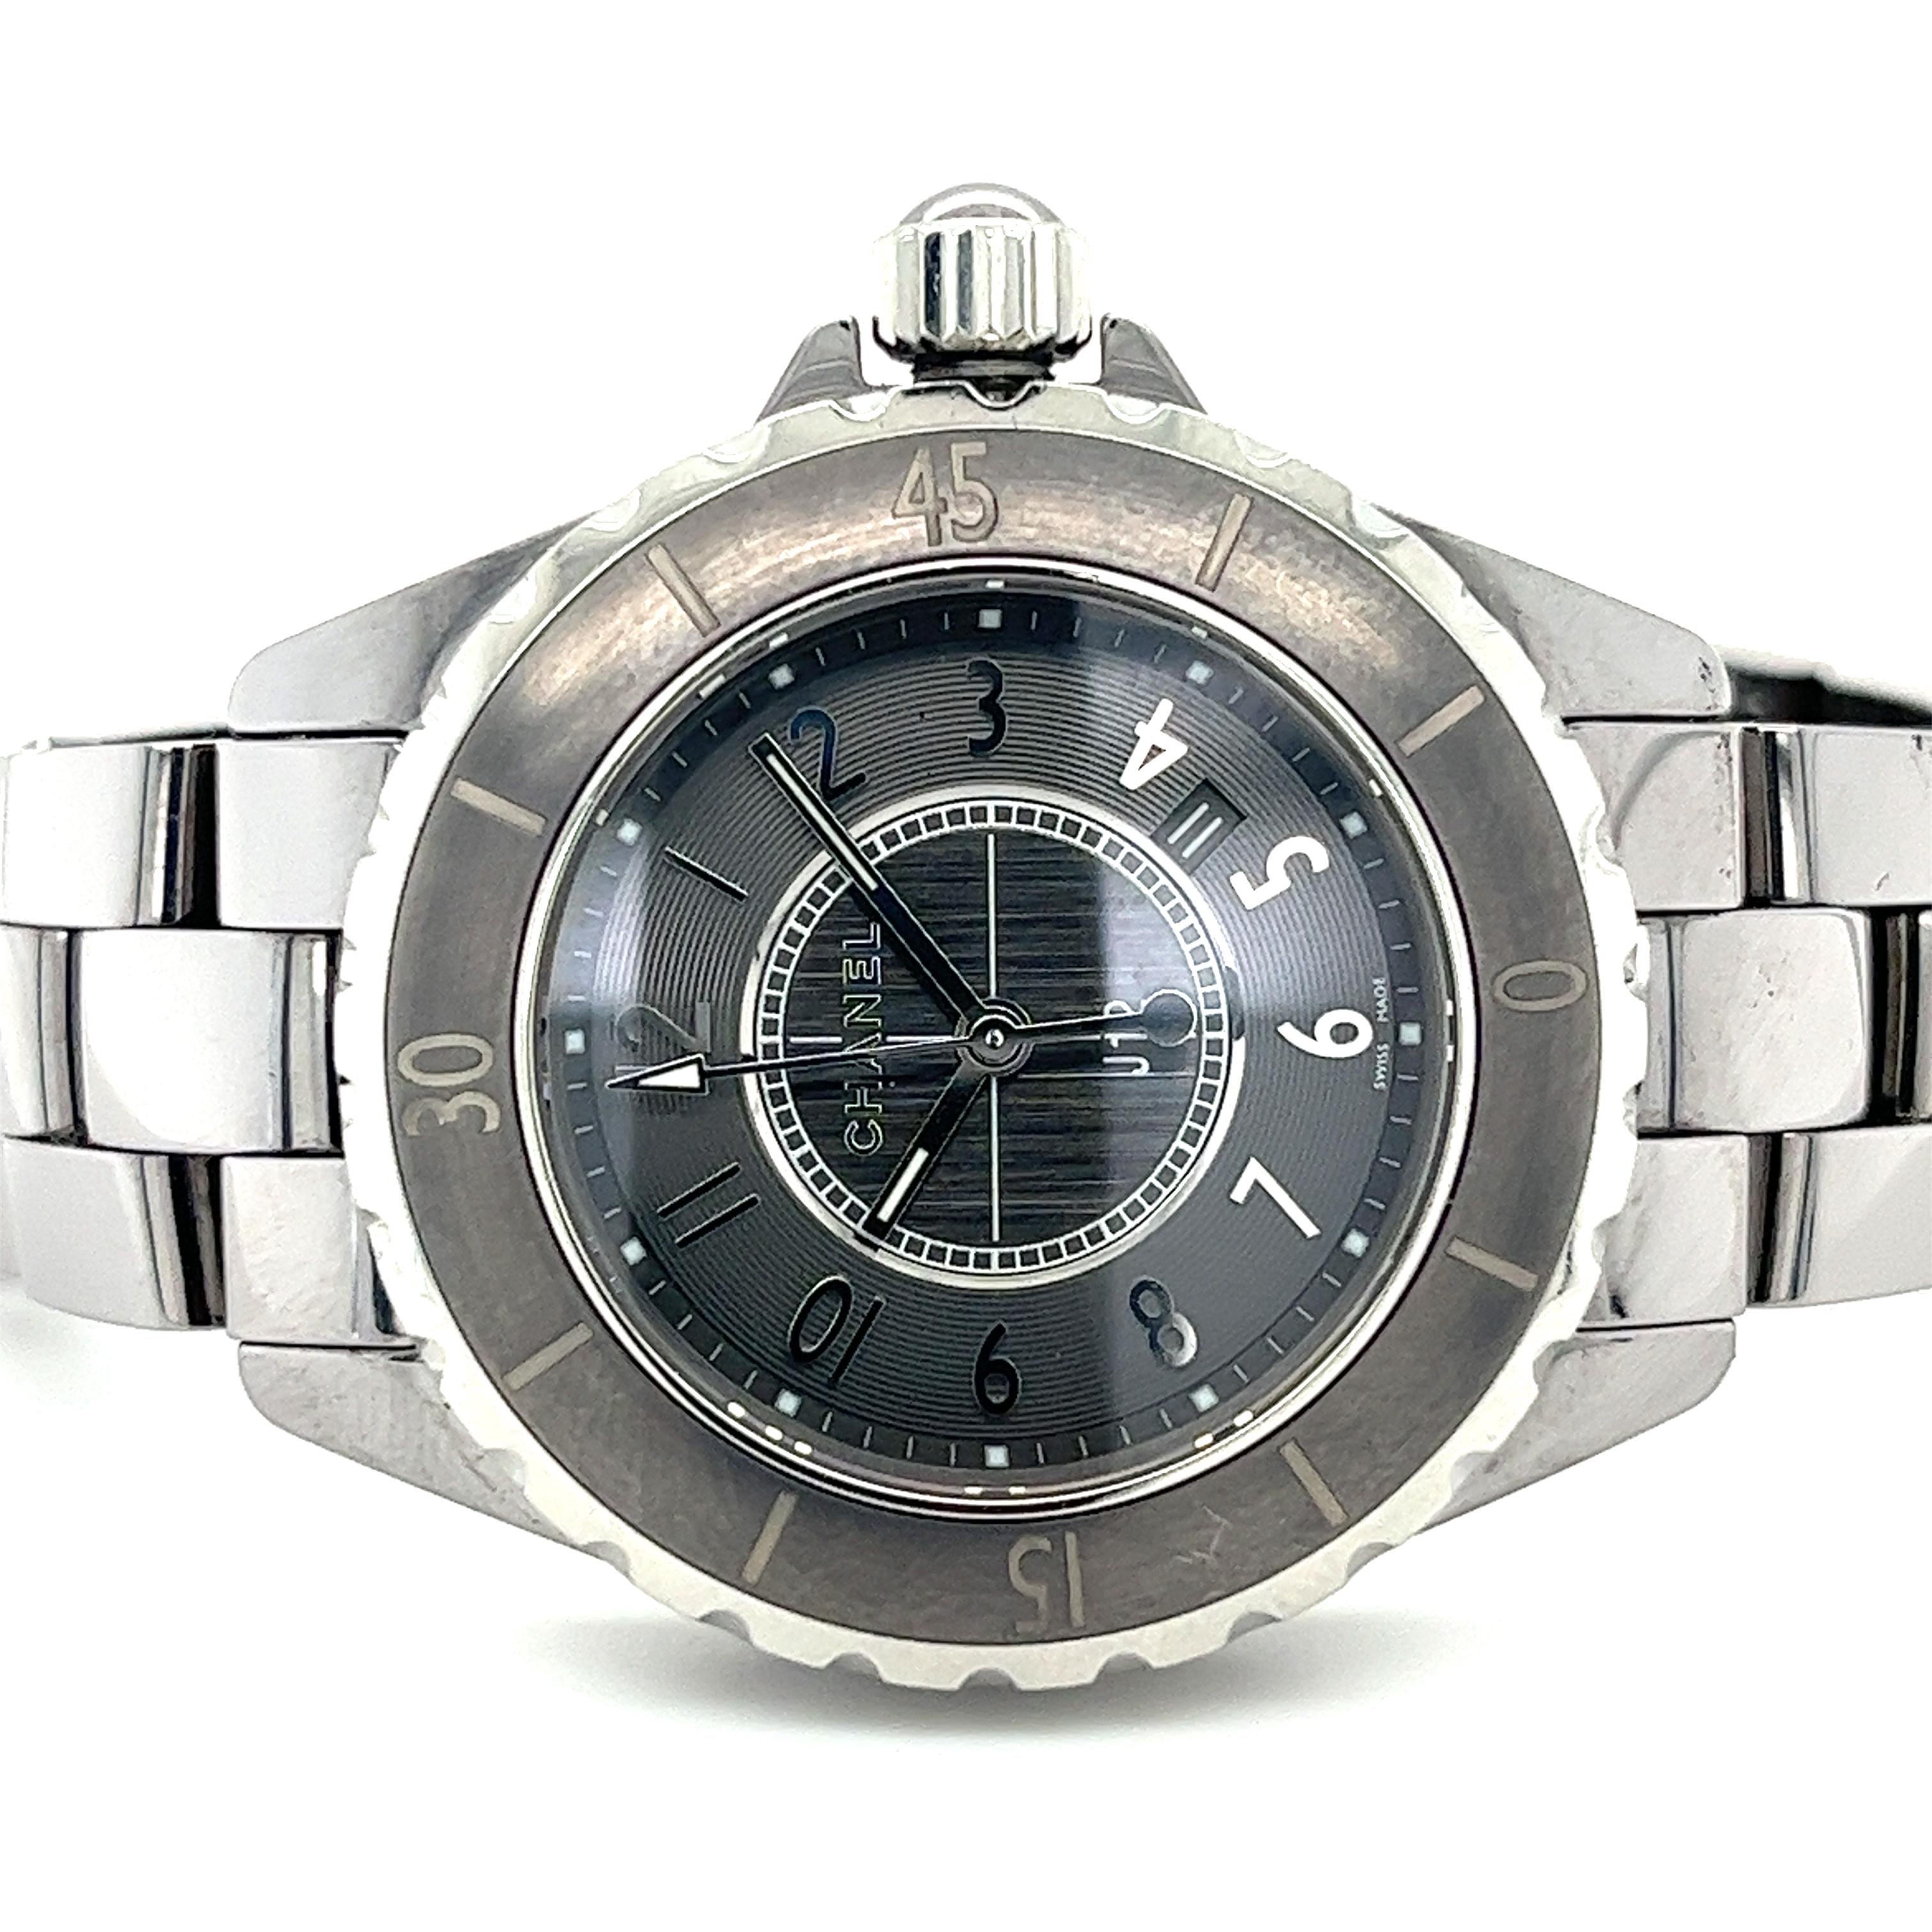 Chanel J12 Quartz Black Ceramic and Stainless Steel 33mm Ladies Wrist Watch with original Chanel watch box. Mouvement à quartz.

- Marque : Chanel
- Genre : Dames - Modèle : J12
- Numéro de modèle : H0682
- Fabriqué en Suisse
- Mouvement : Quartz
-